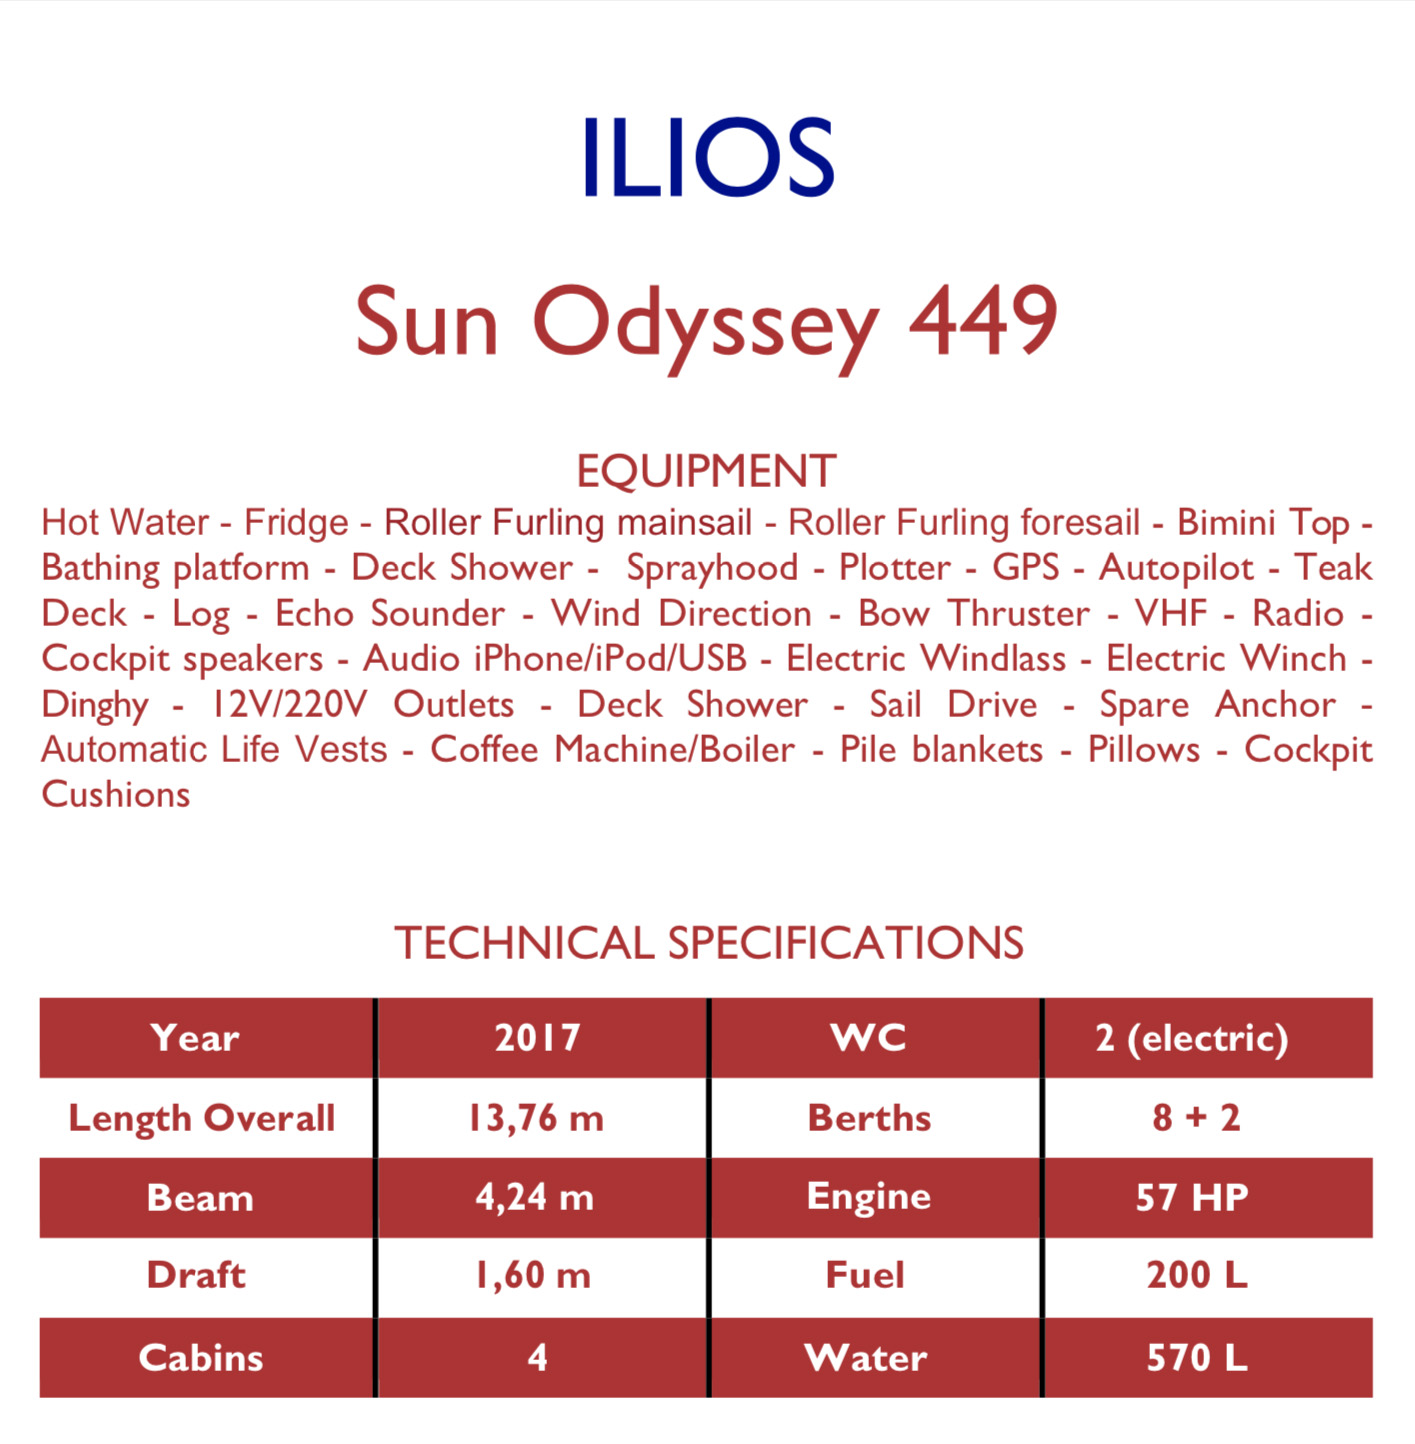 Sun Odyssey 449